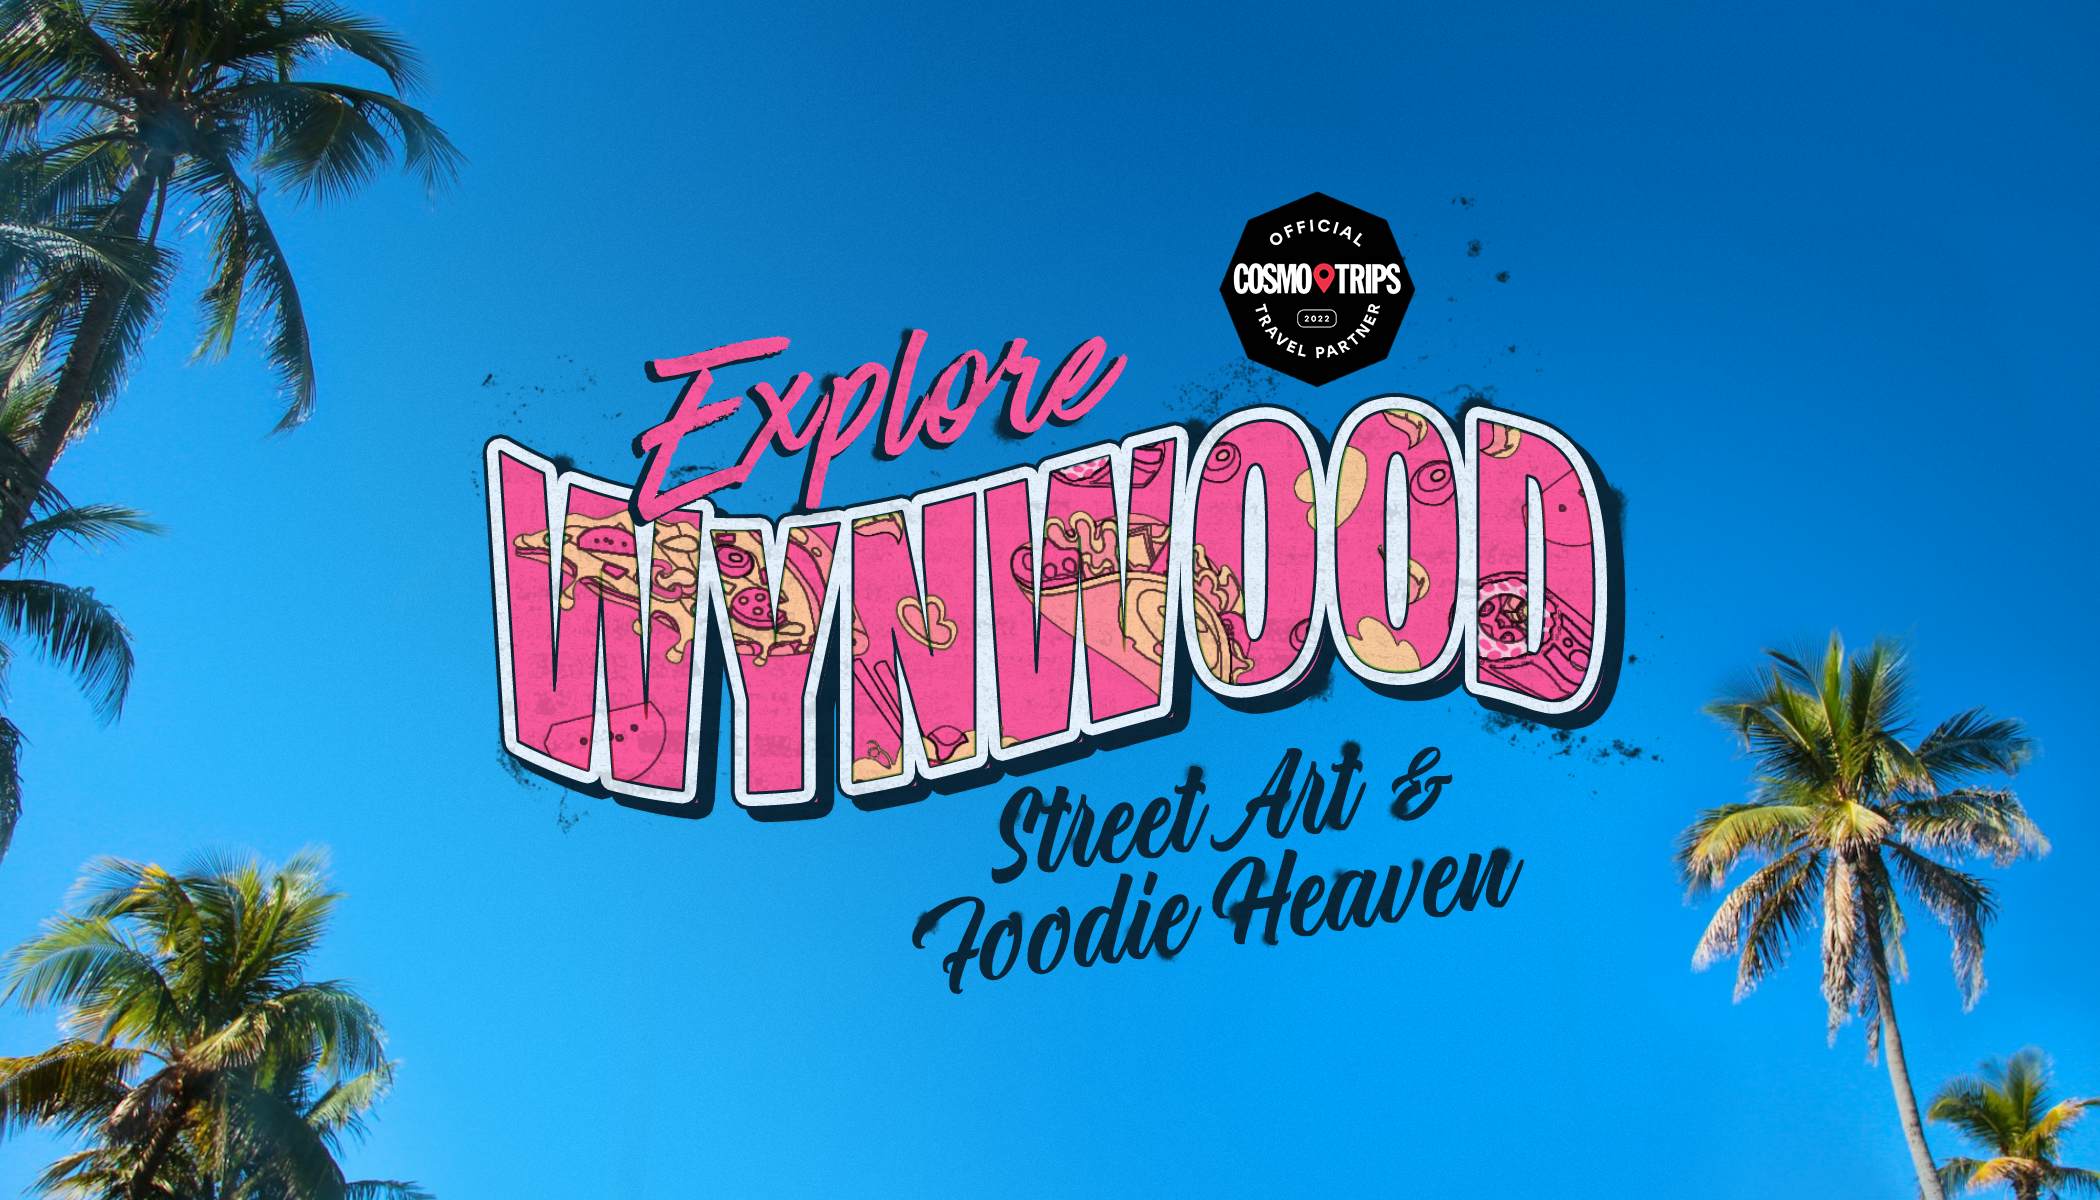 Explore Wynwood: Street Art & Foodie Heaven image